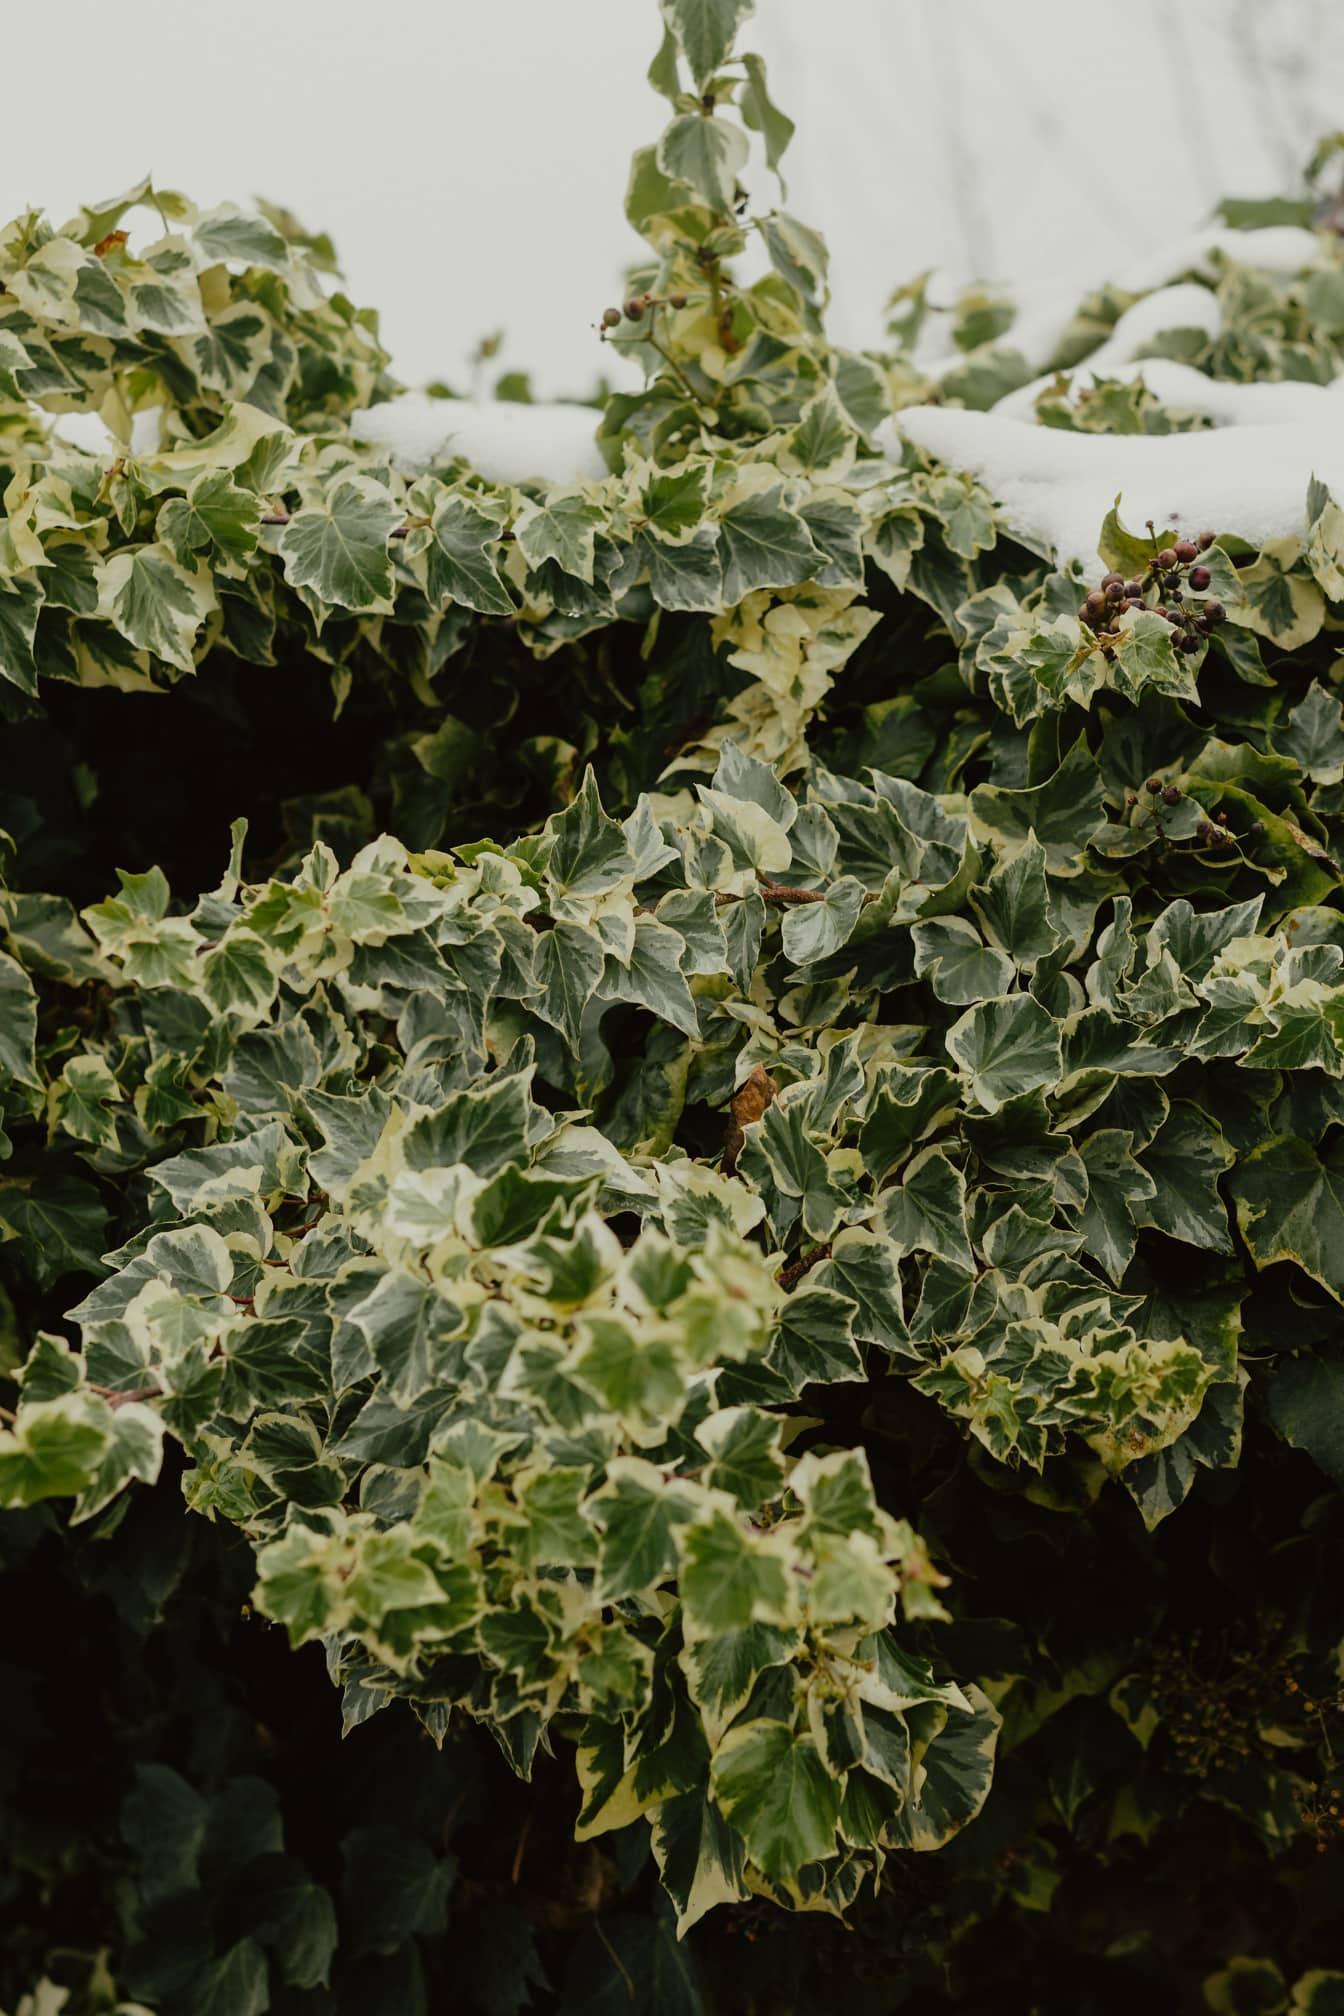 Hiedra Variegata (Hedera helix) arbusto en la nieve